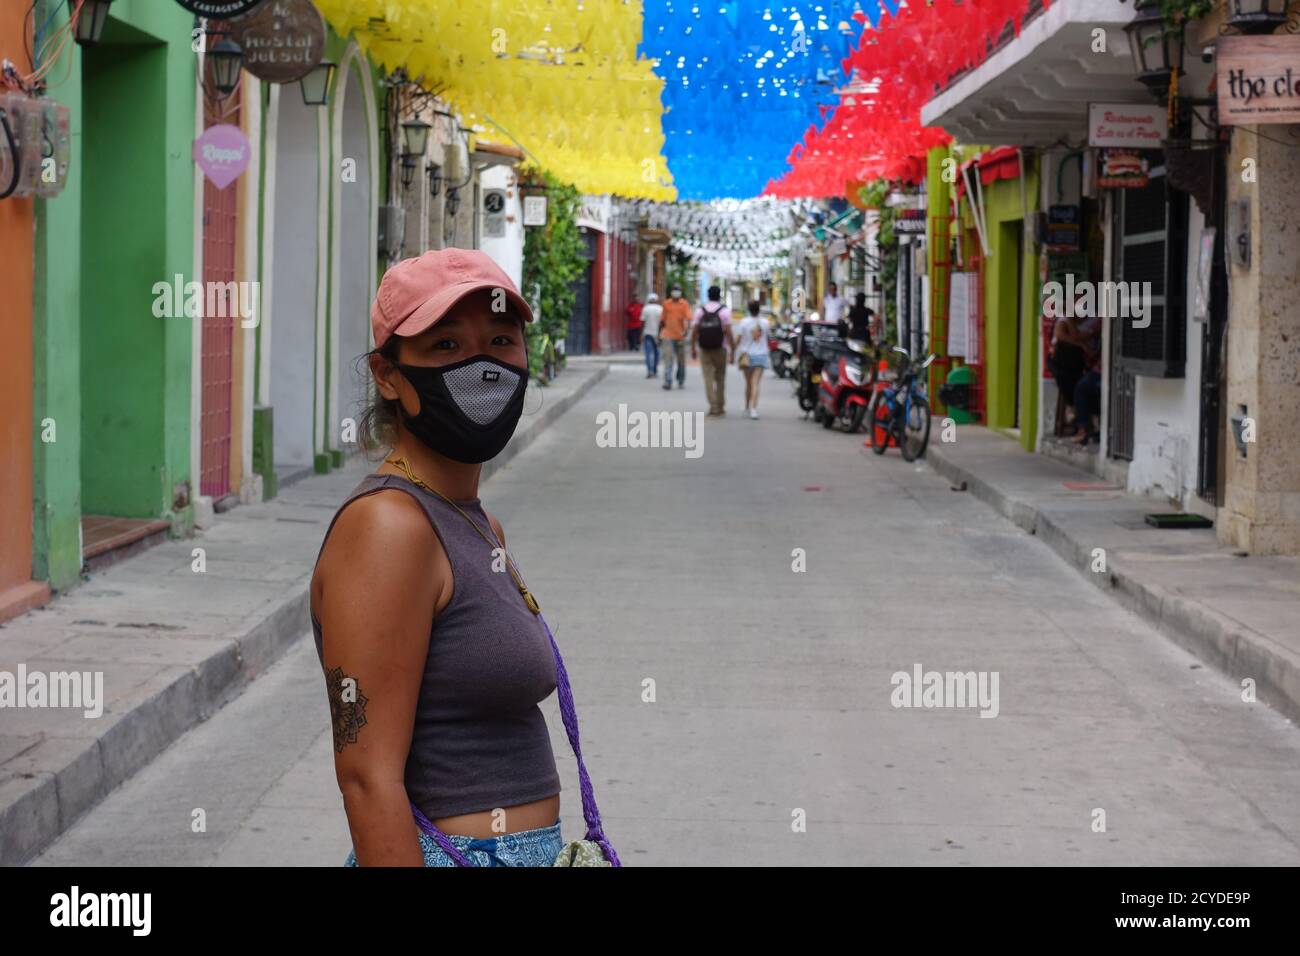 Femme avec un masque facial à usage multiple et des lunettes de soleil sous les drapeaux pendant la quarantaine Covid-19 à Cartagena, Colombie. 2020 Banque D'Images